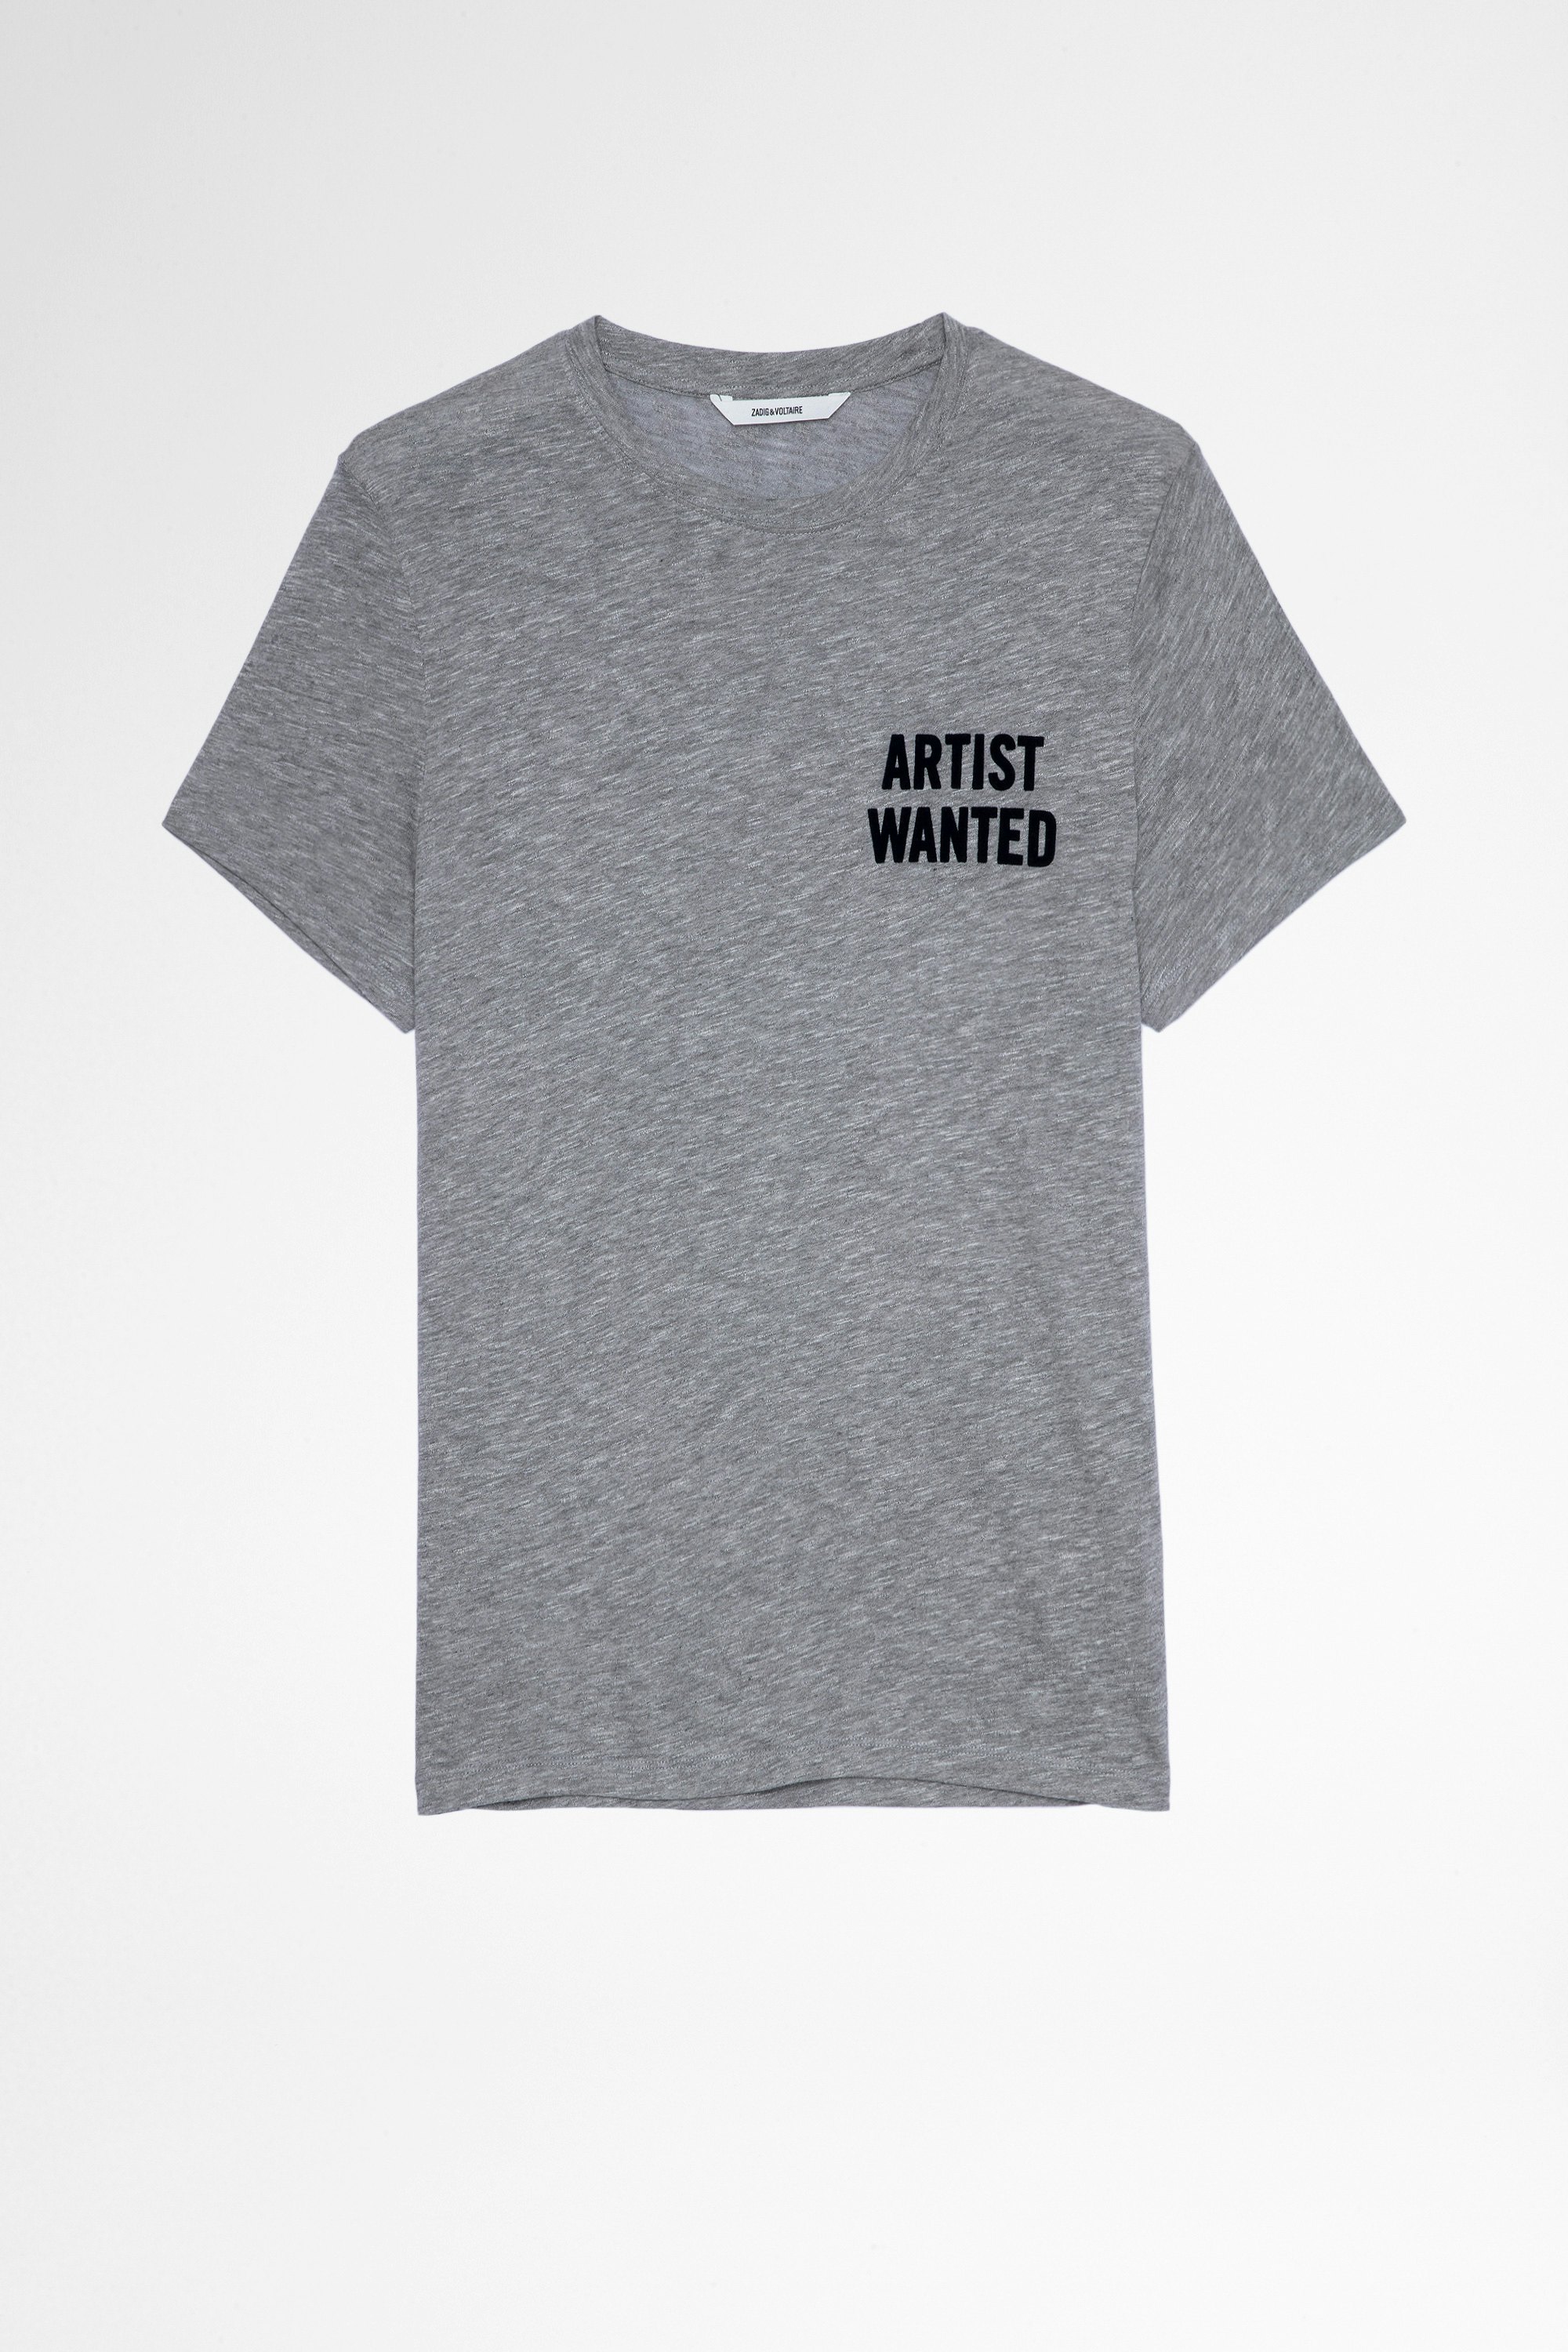 T-Shirt Tommy T-shirt grigia da uomo in cotone e viscosa Artist Wanted, uomo